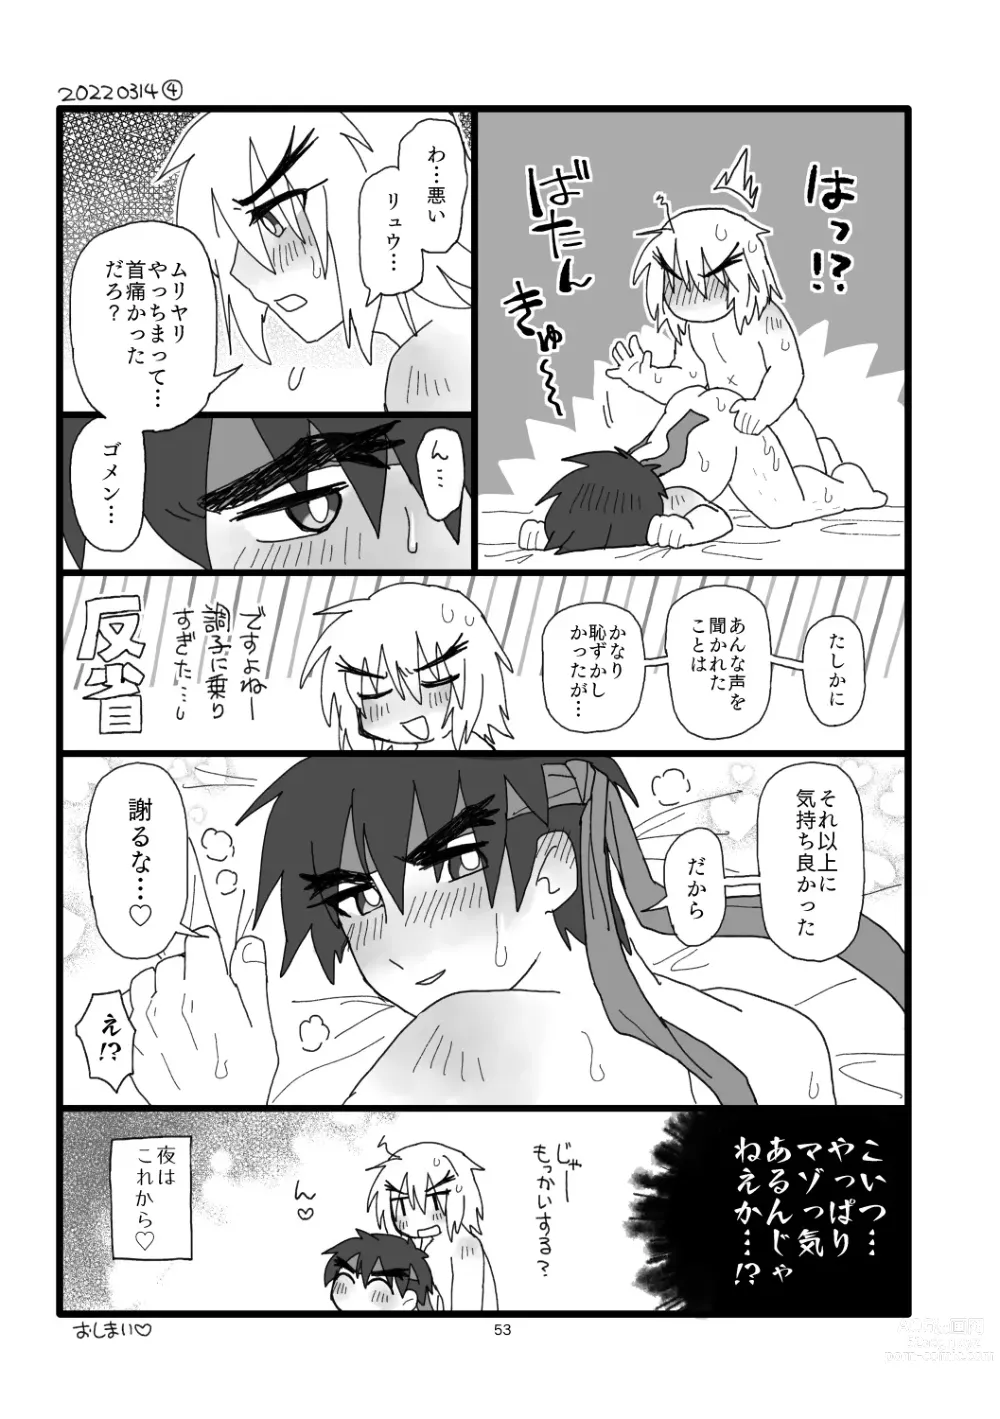 Page 52 of doujinshi Kobushi Kiss